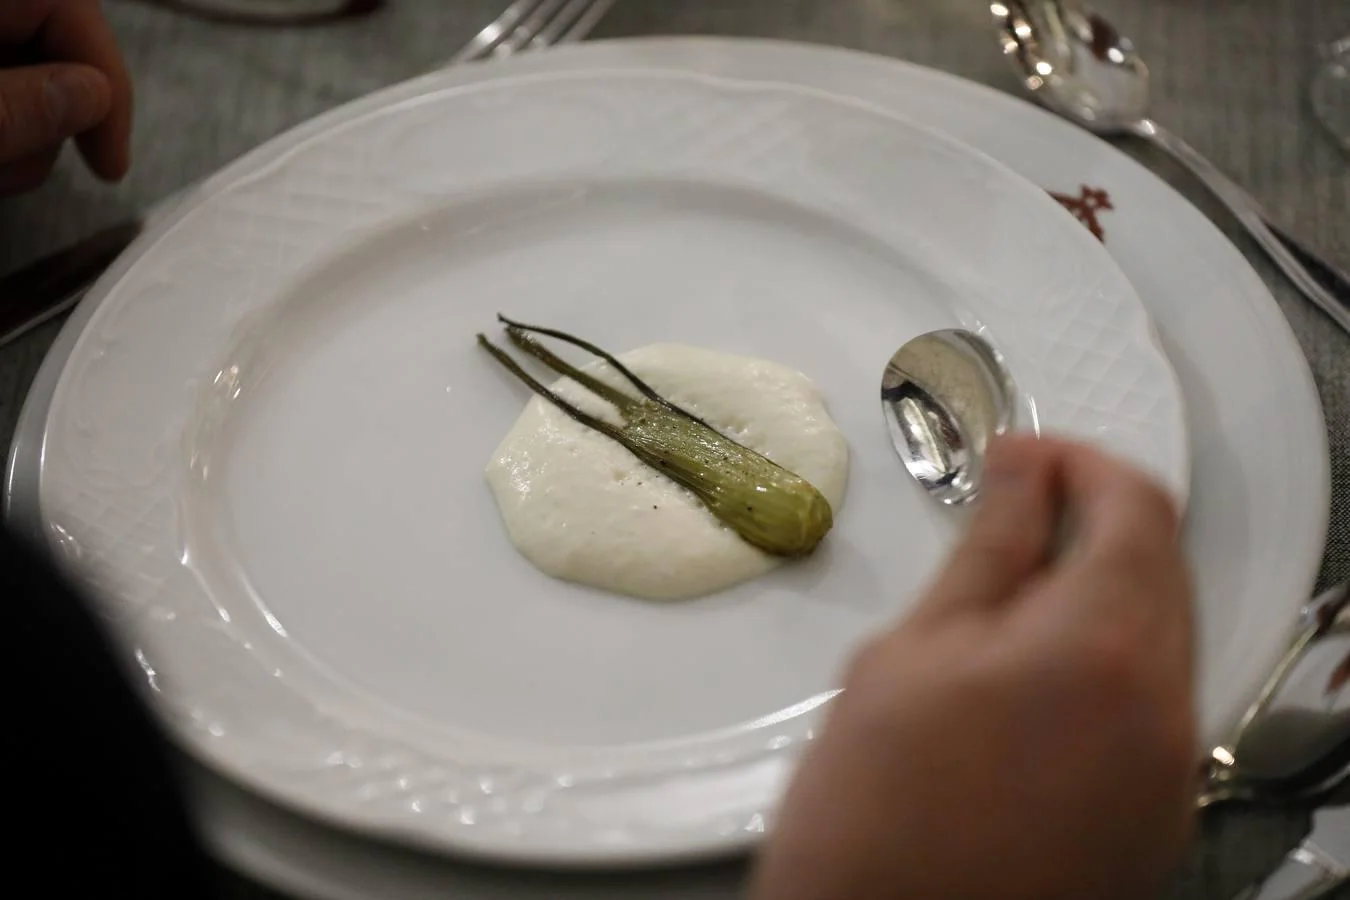 La cena de Córdoba Califato Gourmet, en imágenes